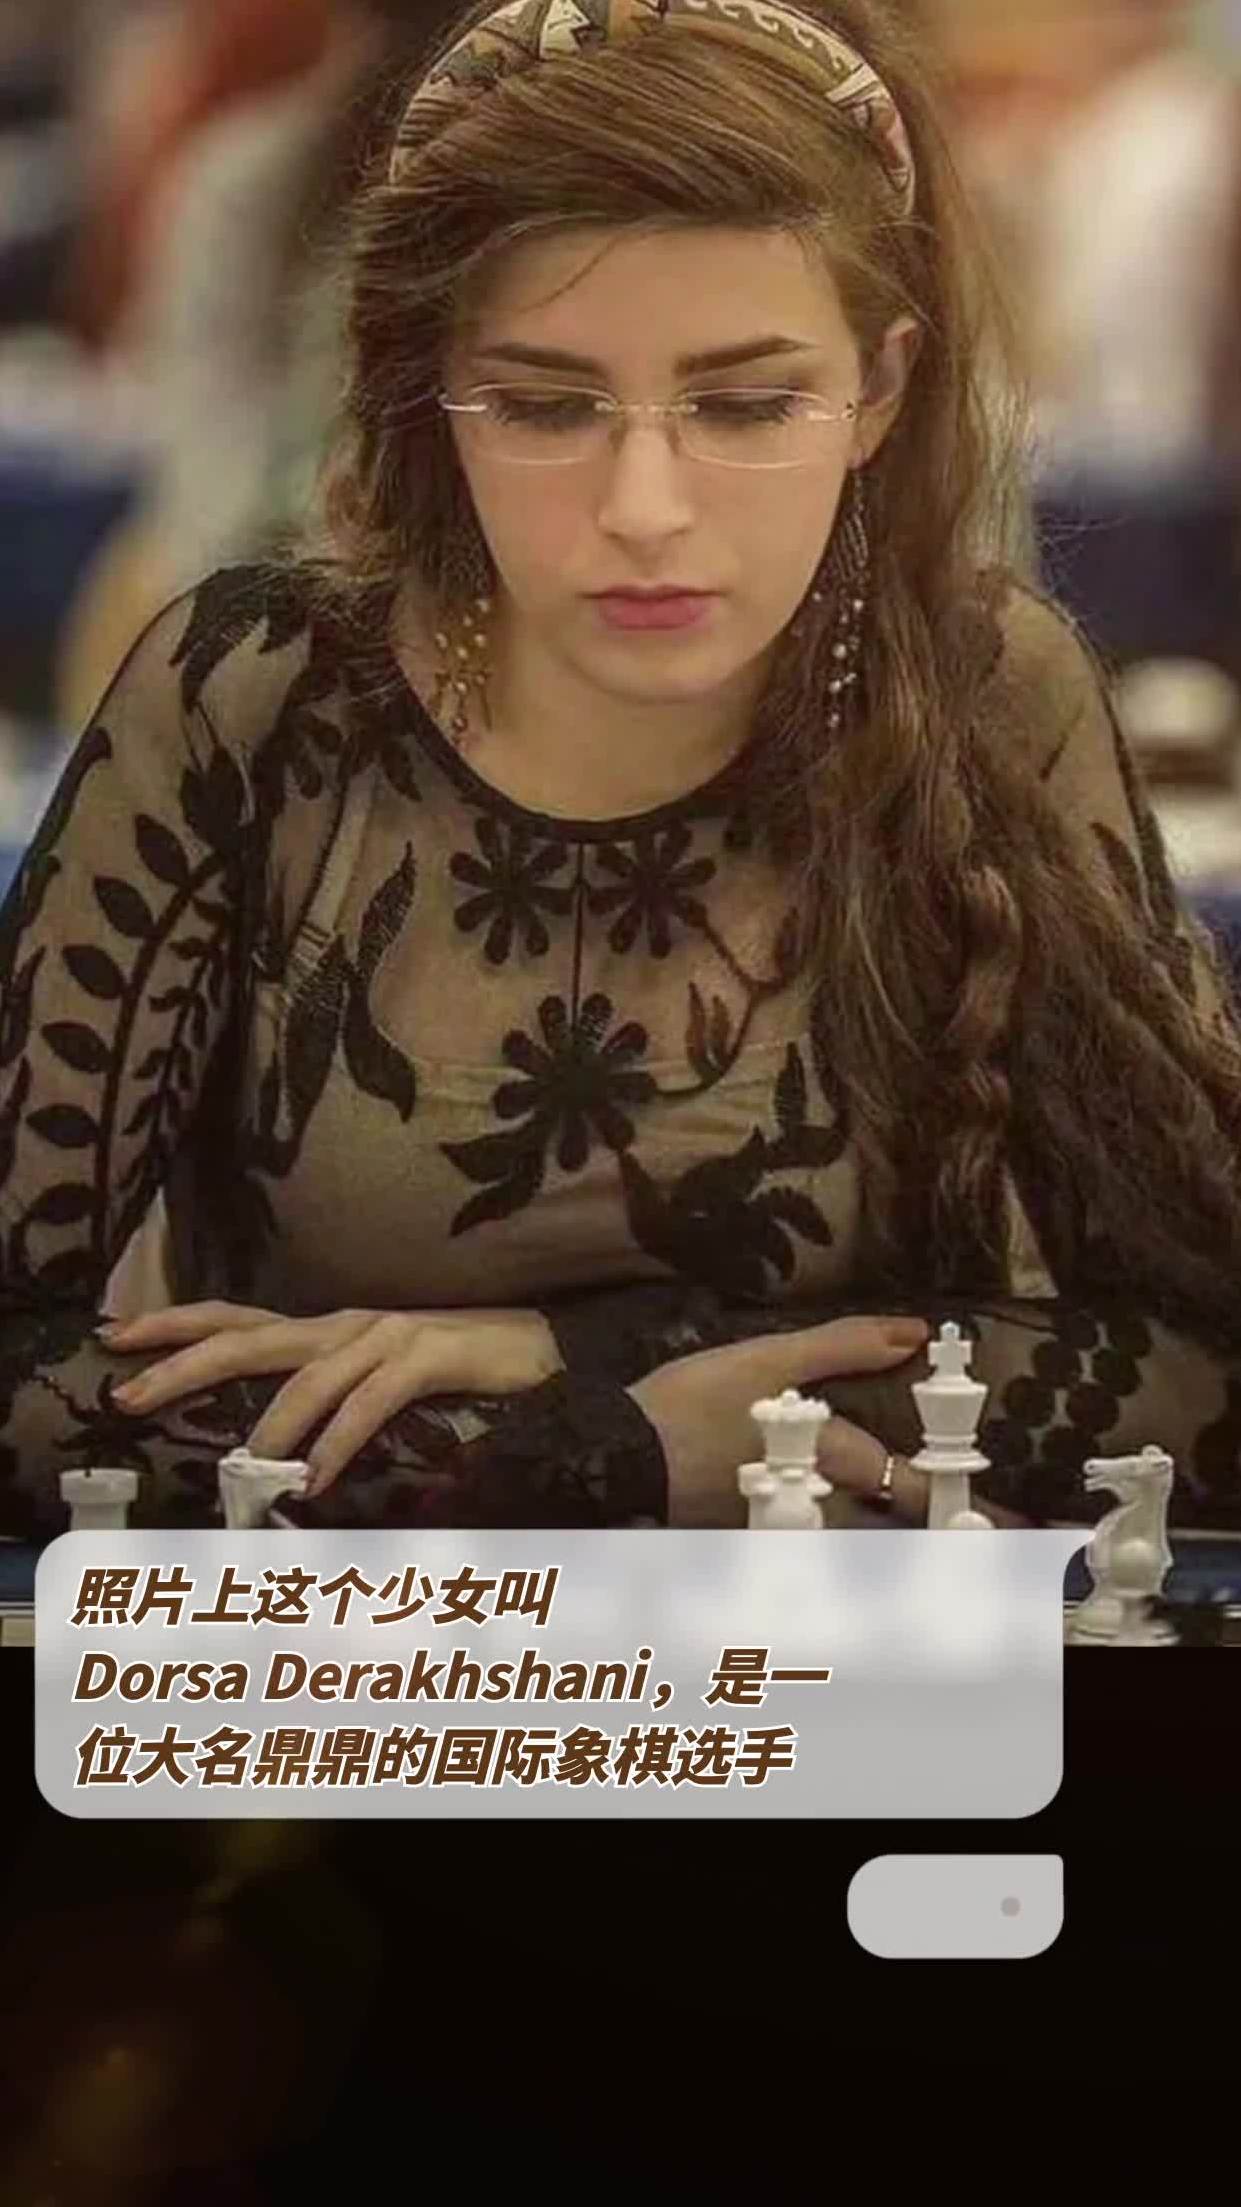 照片上這個少女叫DorsaDerakhshani，是一位大名鼎鼎的國際象棋選手